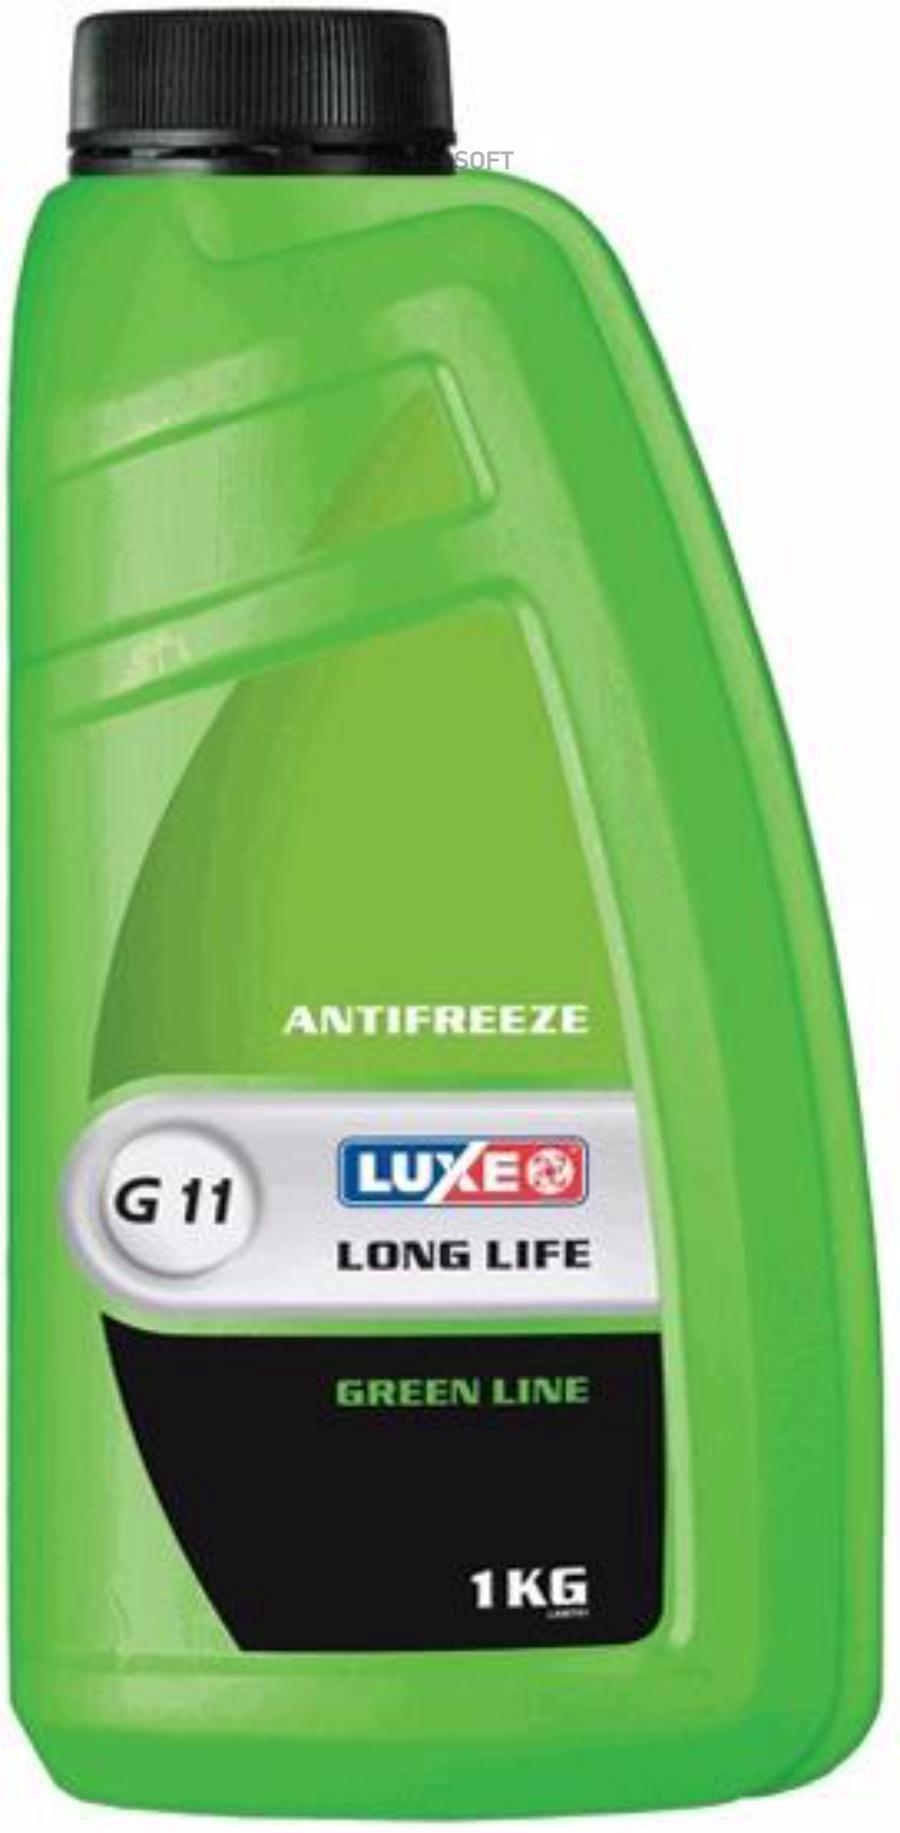 667 LUXE Антифриз готовый к применению LUXE Antifreeze Green Line G11 (1л)